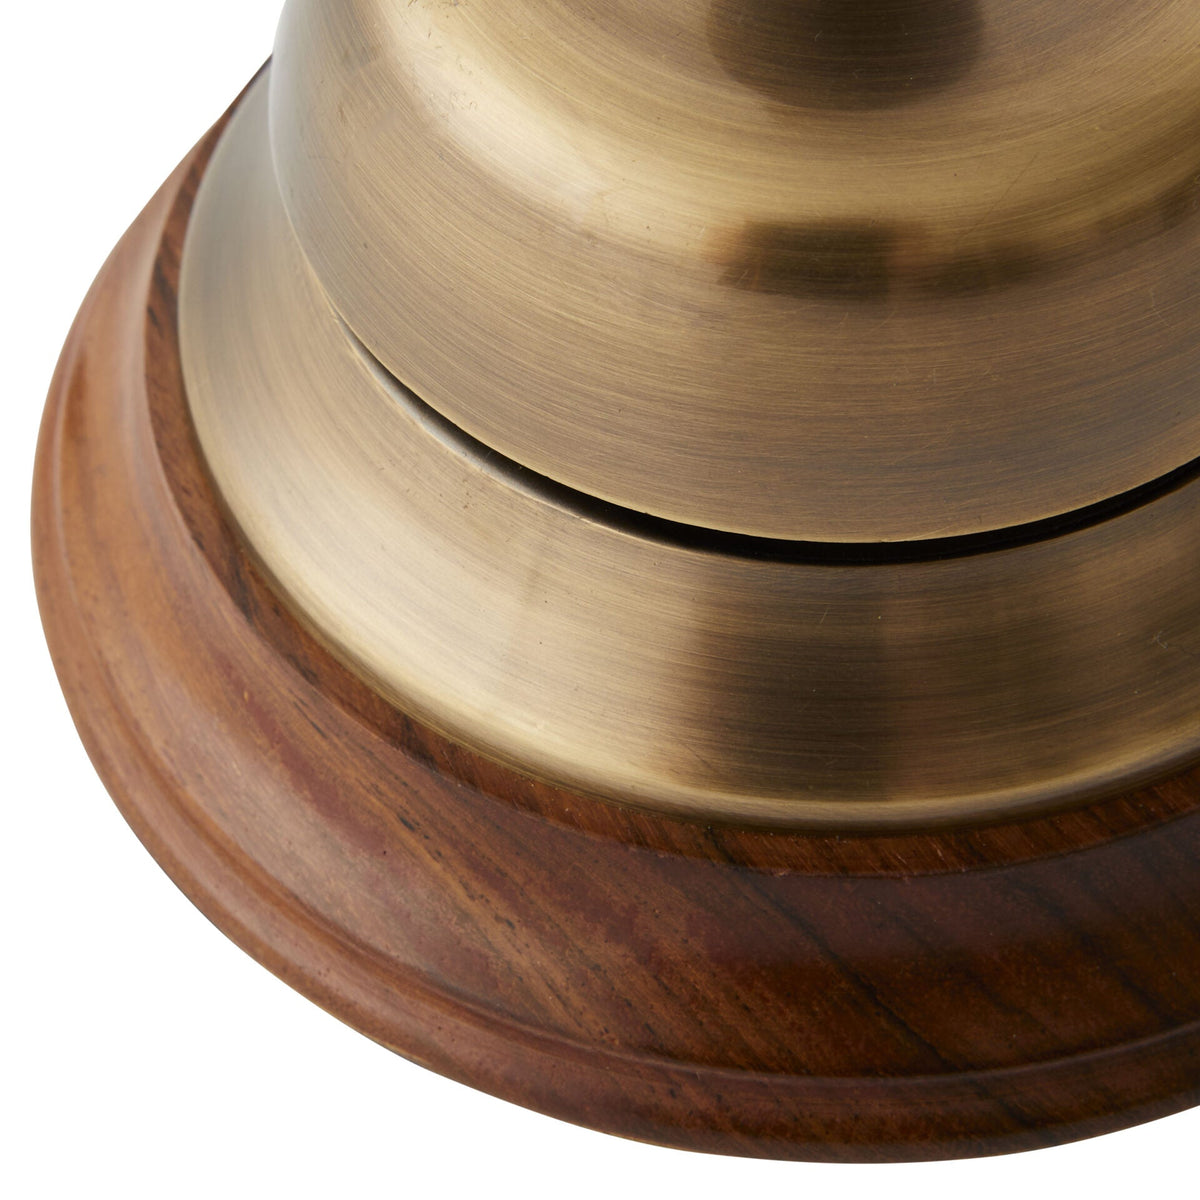 Desk Call Bell in Bronze & Wood - 12cm